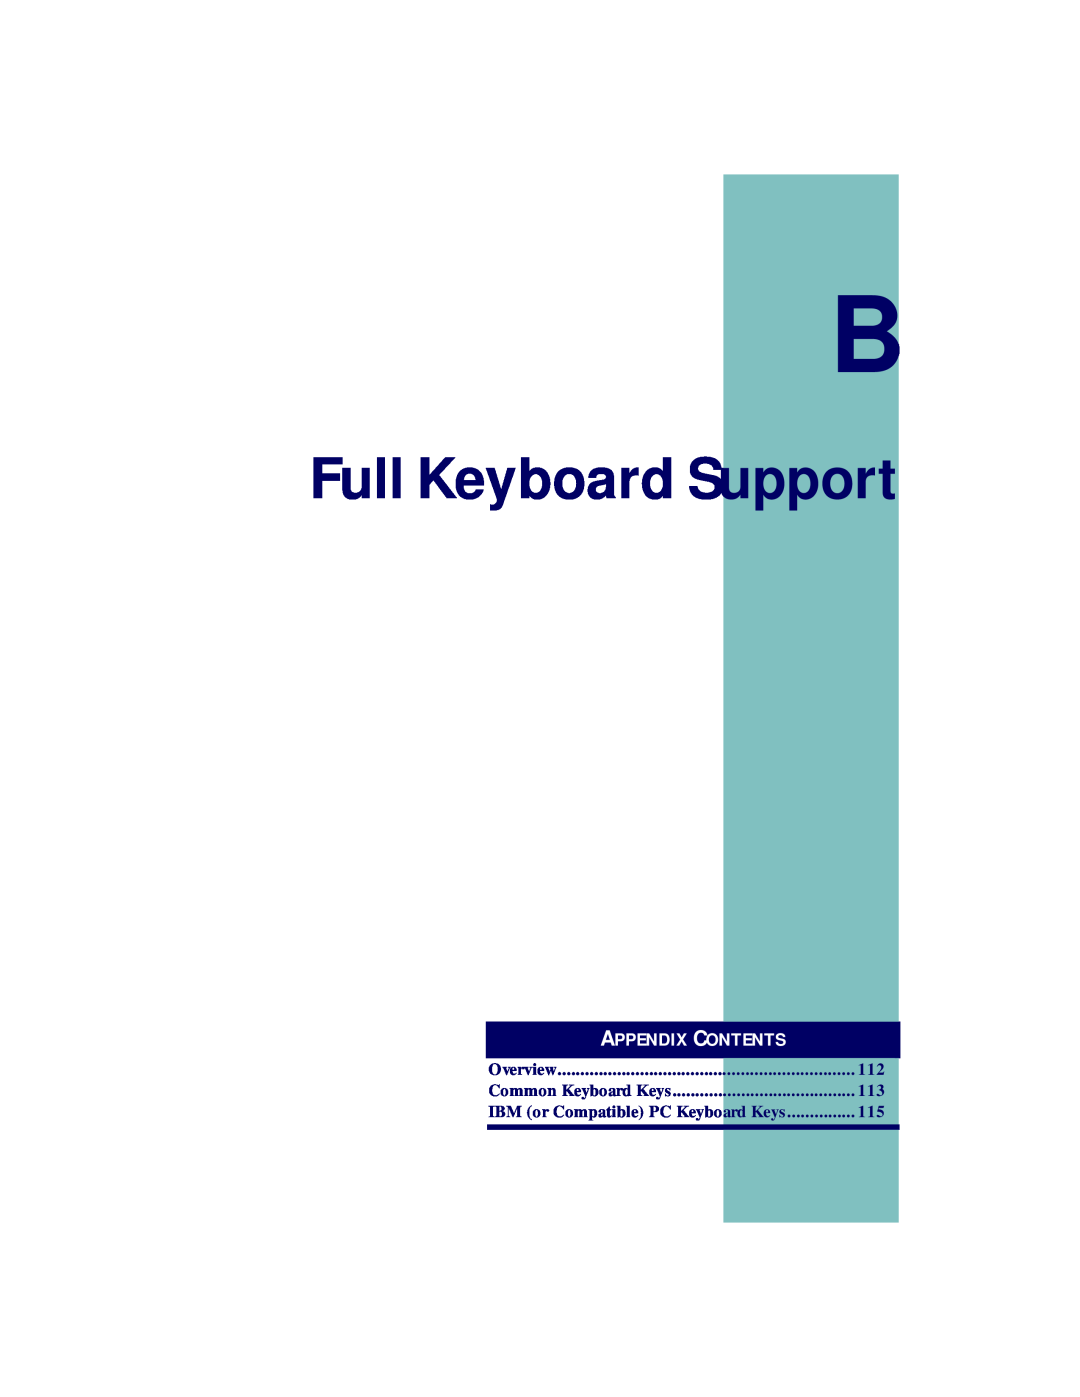 PSC PT2000, TopGun manual Full Keyboard Support, Appendix Contents 